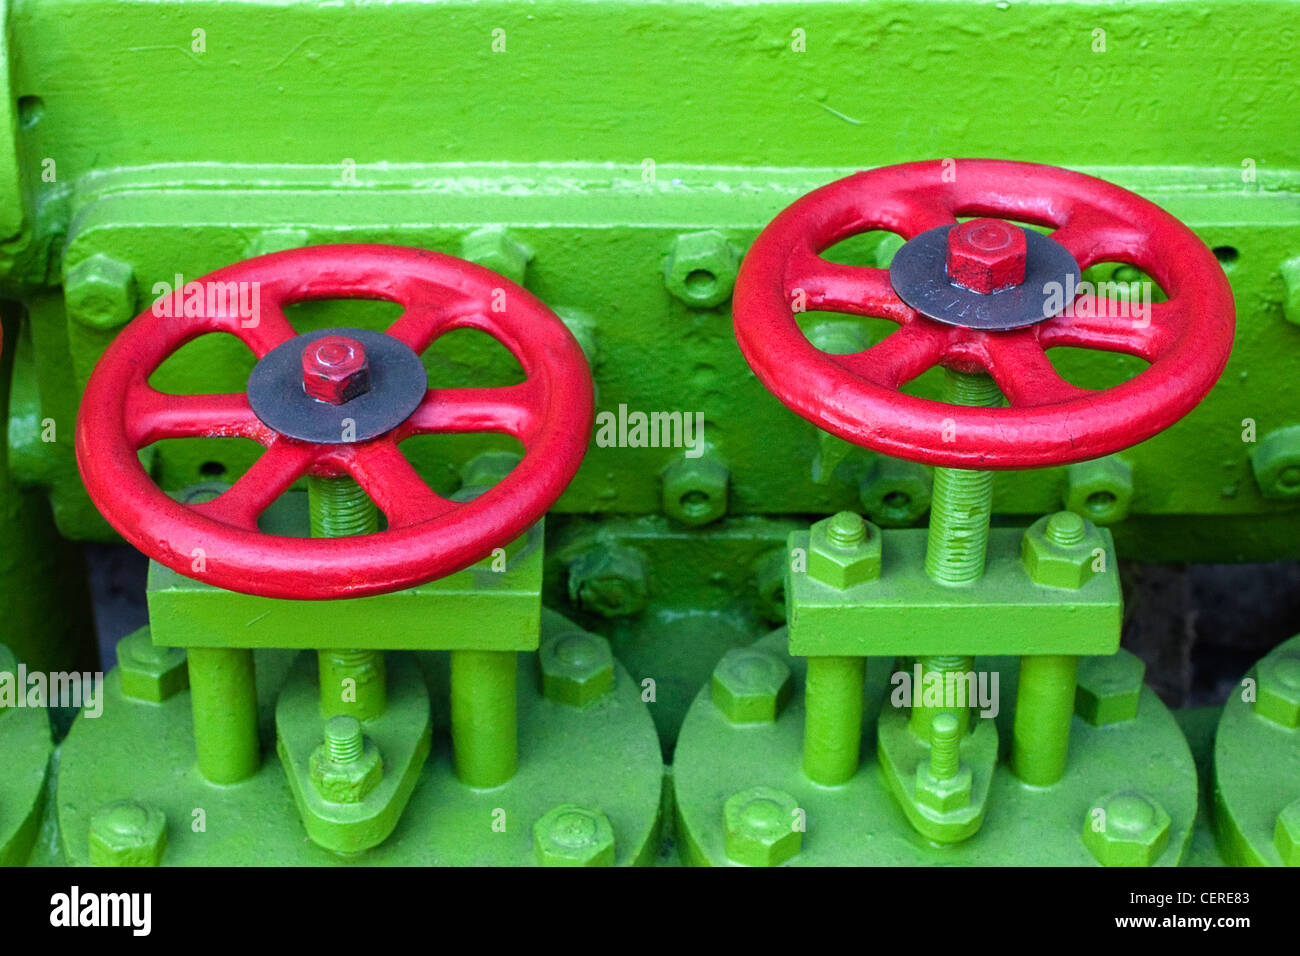 Ingegneria di due valvole di flusso con le maniglie verniciate in rosso contro il motore verniciato di verde Foto Stock